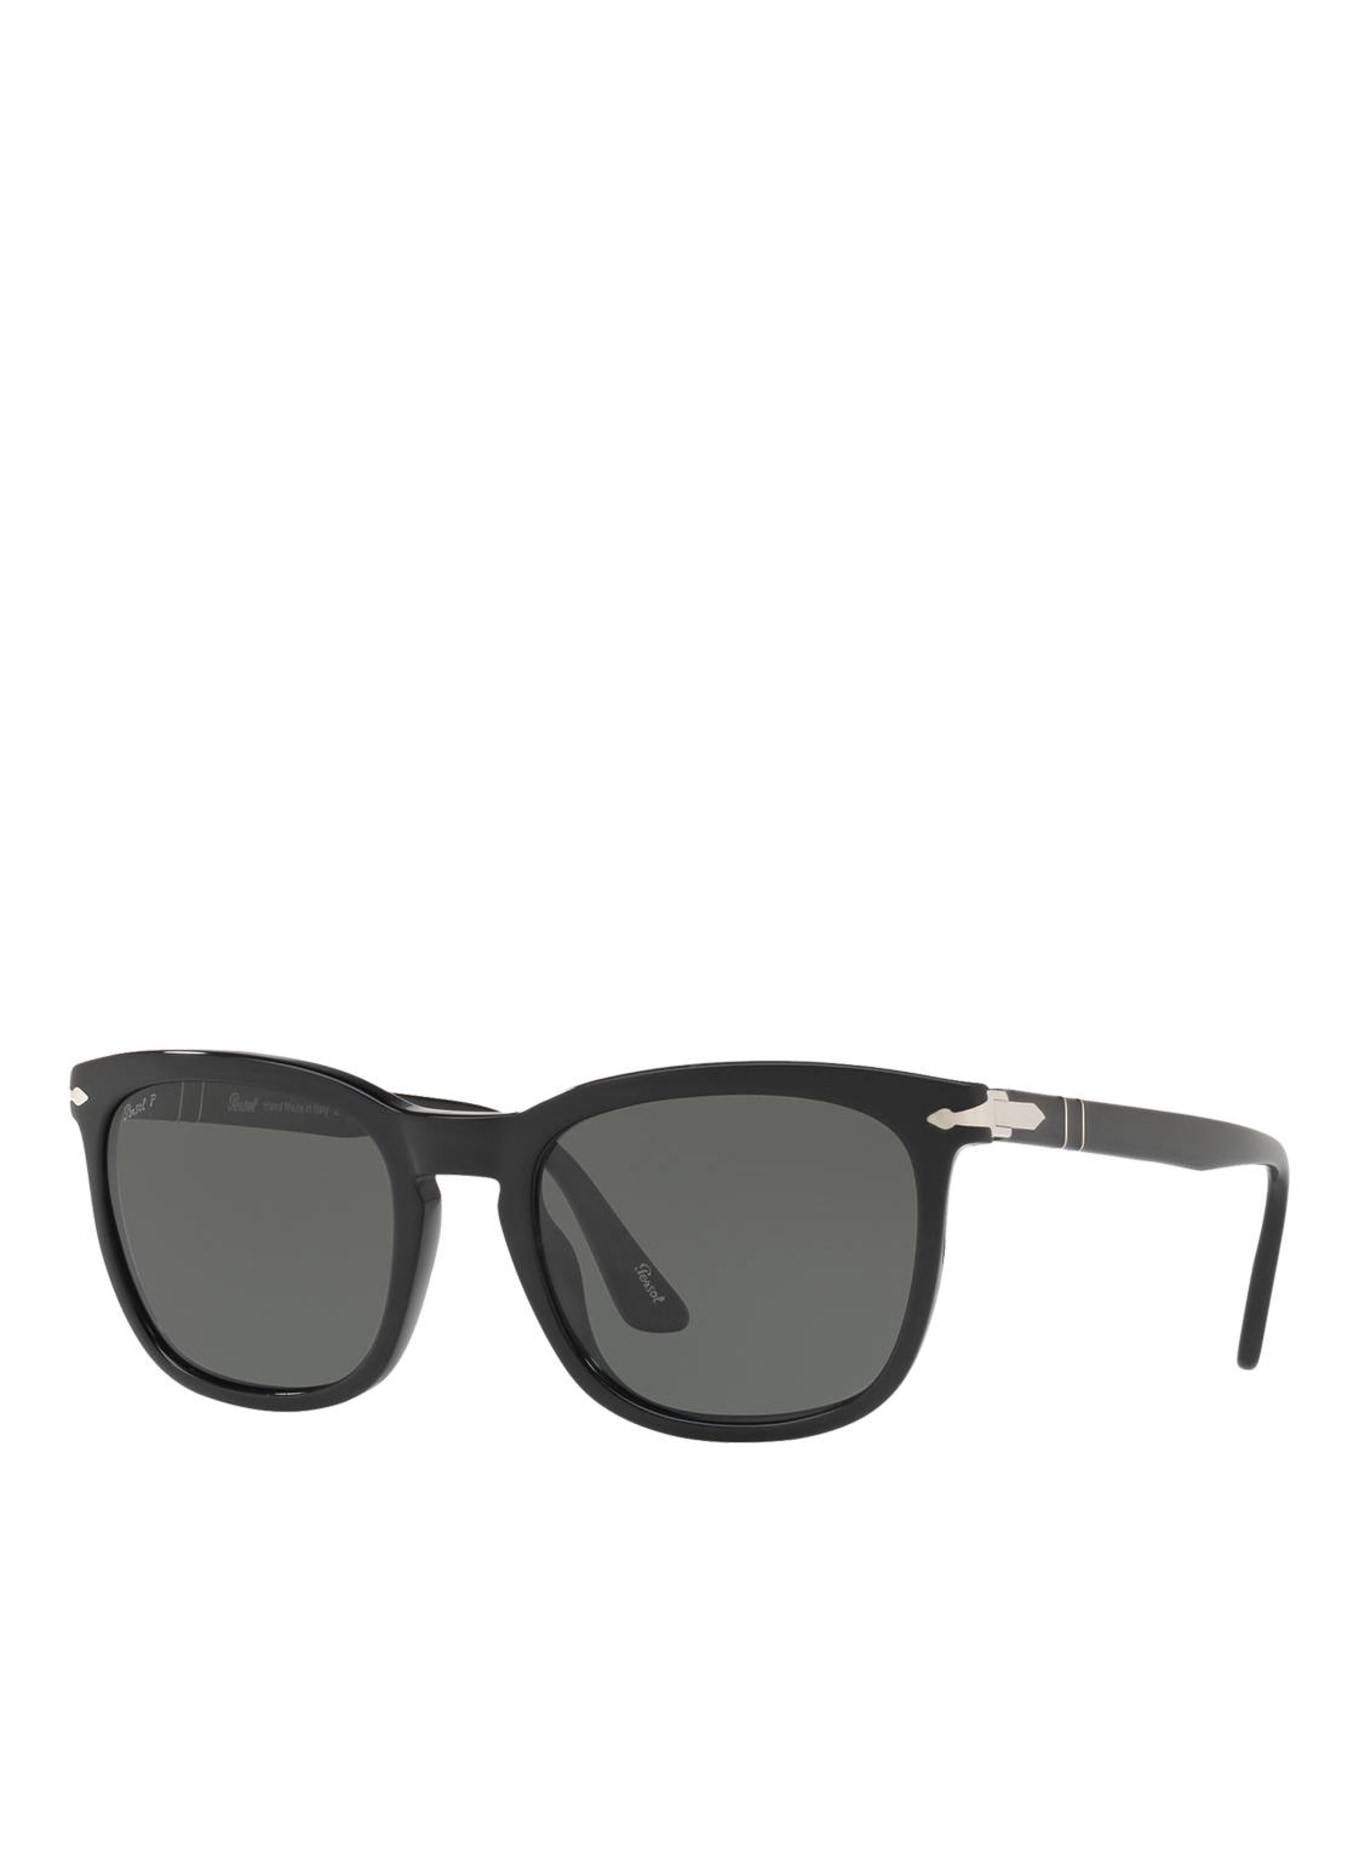 Persol Sunglasses PO3193S, Color: 95/58 - BLACK/ GREEN POLARIZED (Image 1)